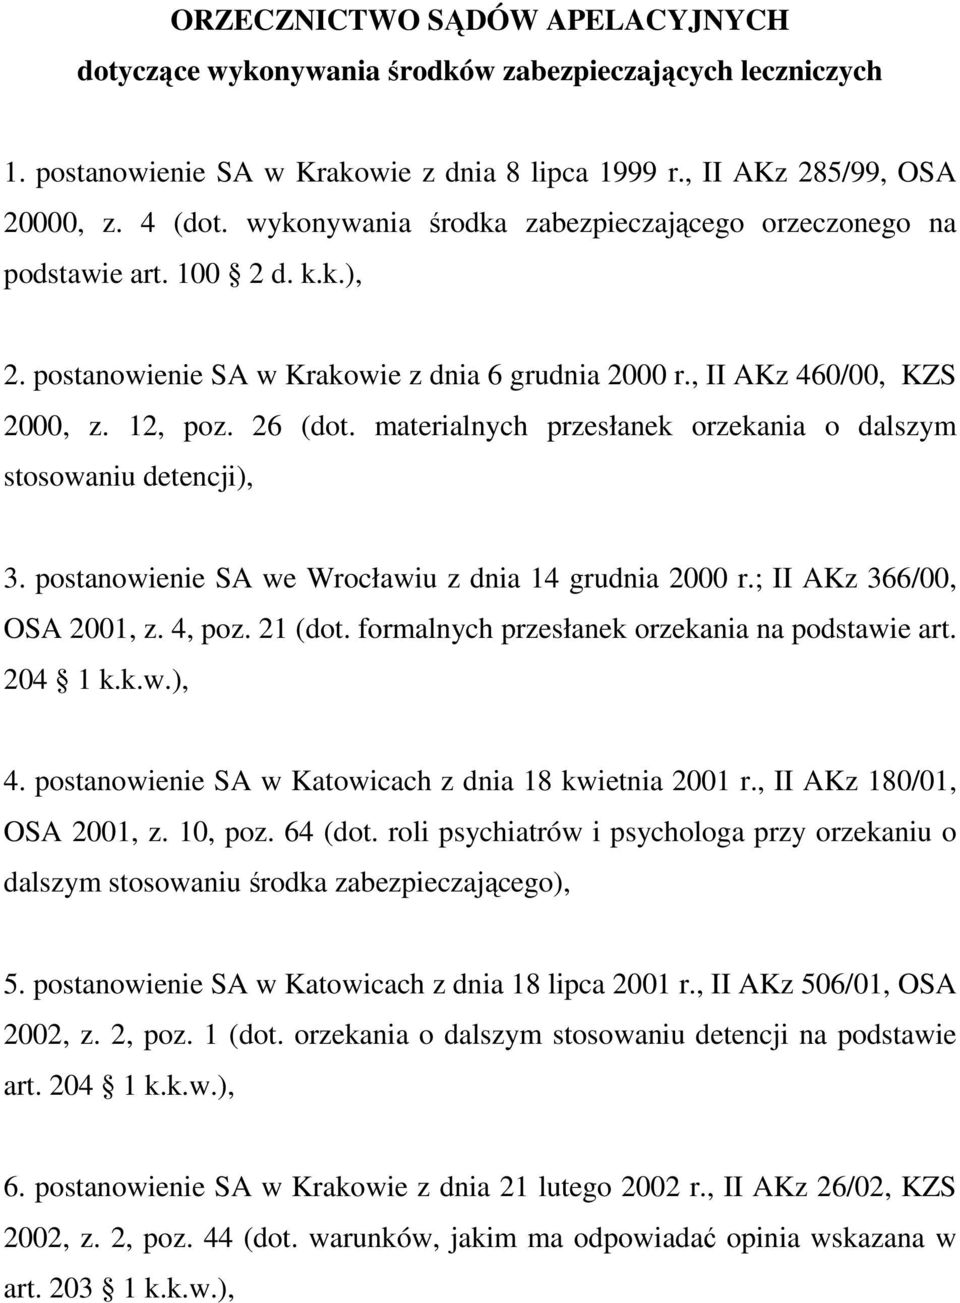 materialnych przesłanek orzekania o dalszym stosowaniu detencji), 3. postanowienie SA we Wrocławiu z dnia 14 grudnia 2000 r.; II AKz 366/00, OSA 2001, z. 4, poz. 21 (dot.